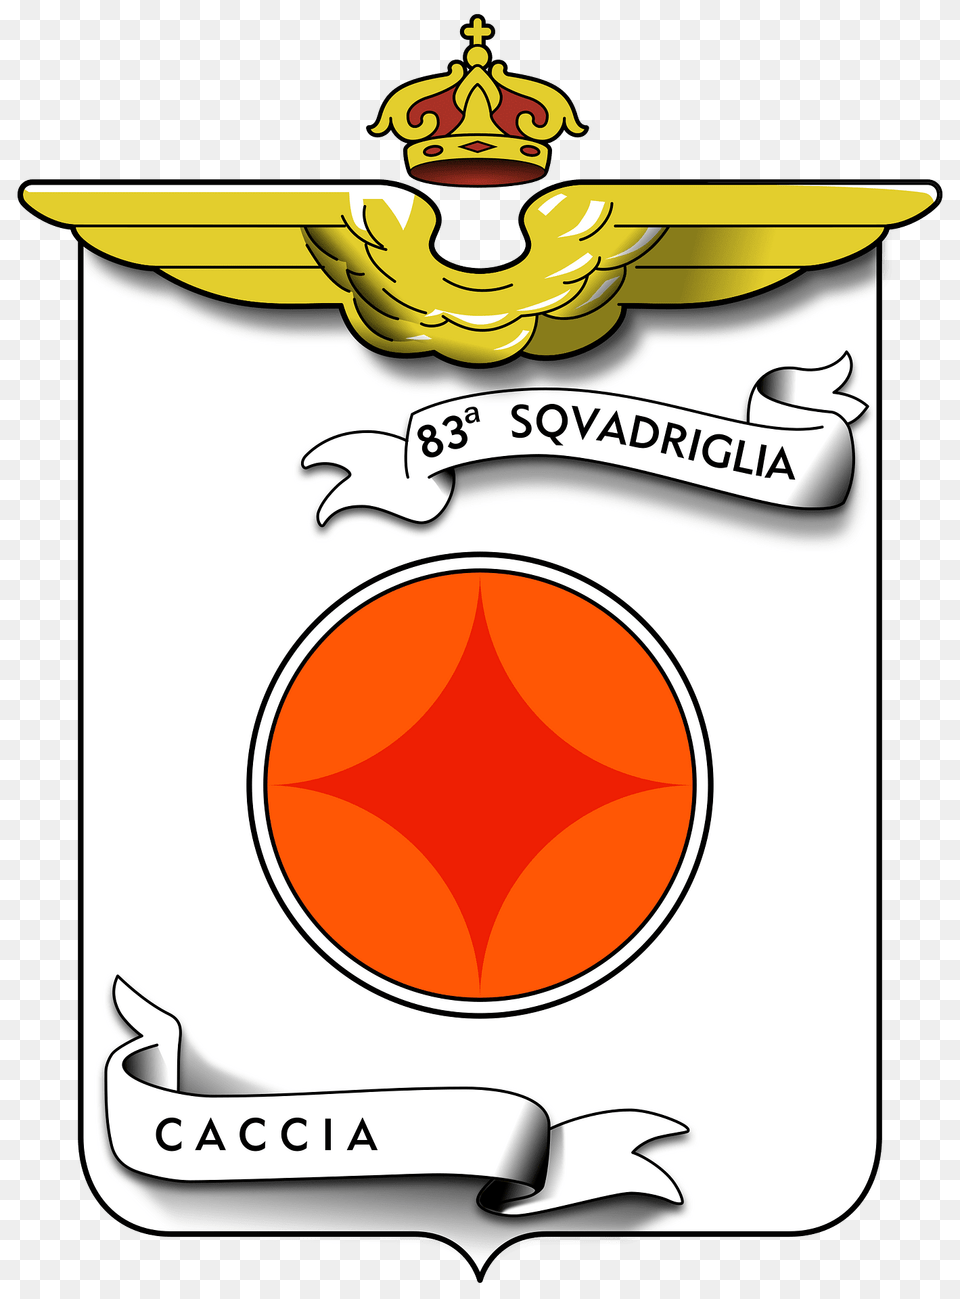 Coa 83 Squadriglia Caccia Clipart, Logo, Badge, Symbol, Emblem Png Image